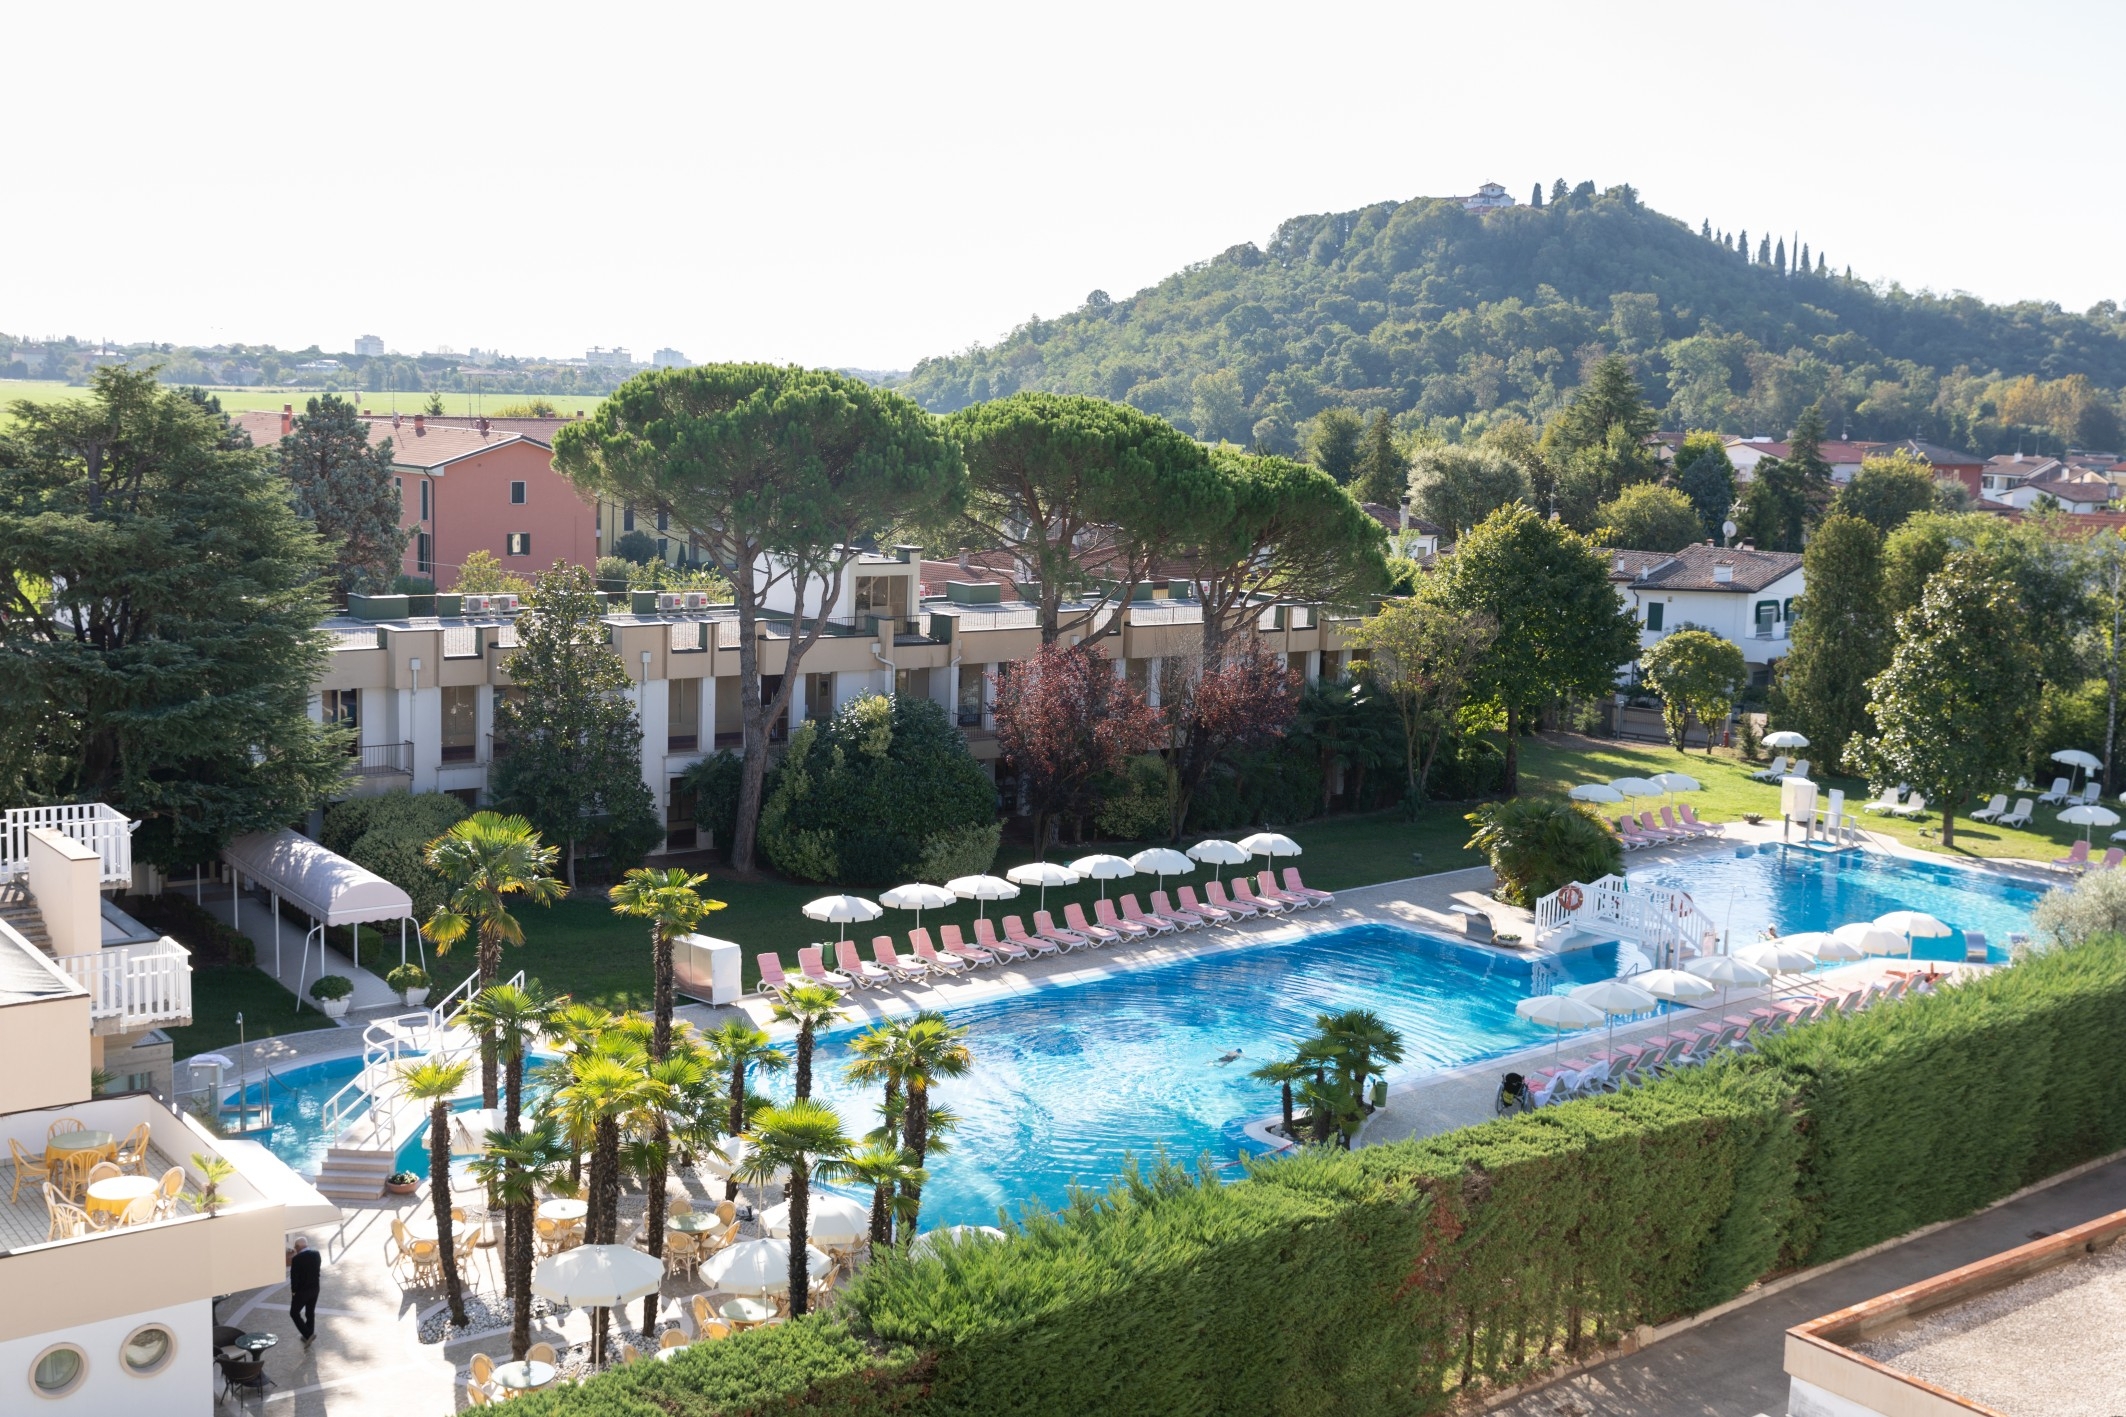 All’Ermitage Bel Air Medical Hotel di Abano Terme, anche quest’anno premiato come albergo più accessibile d’Italia, soggiorni protetti e sicuri.